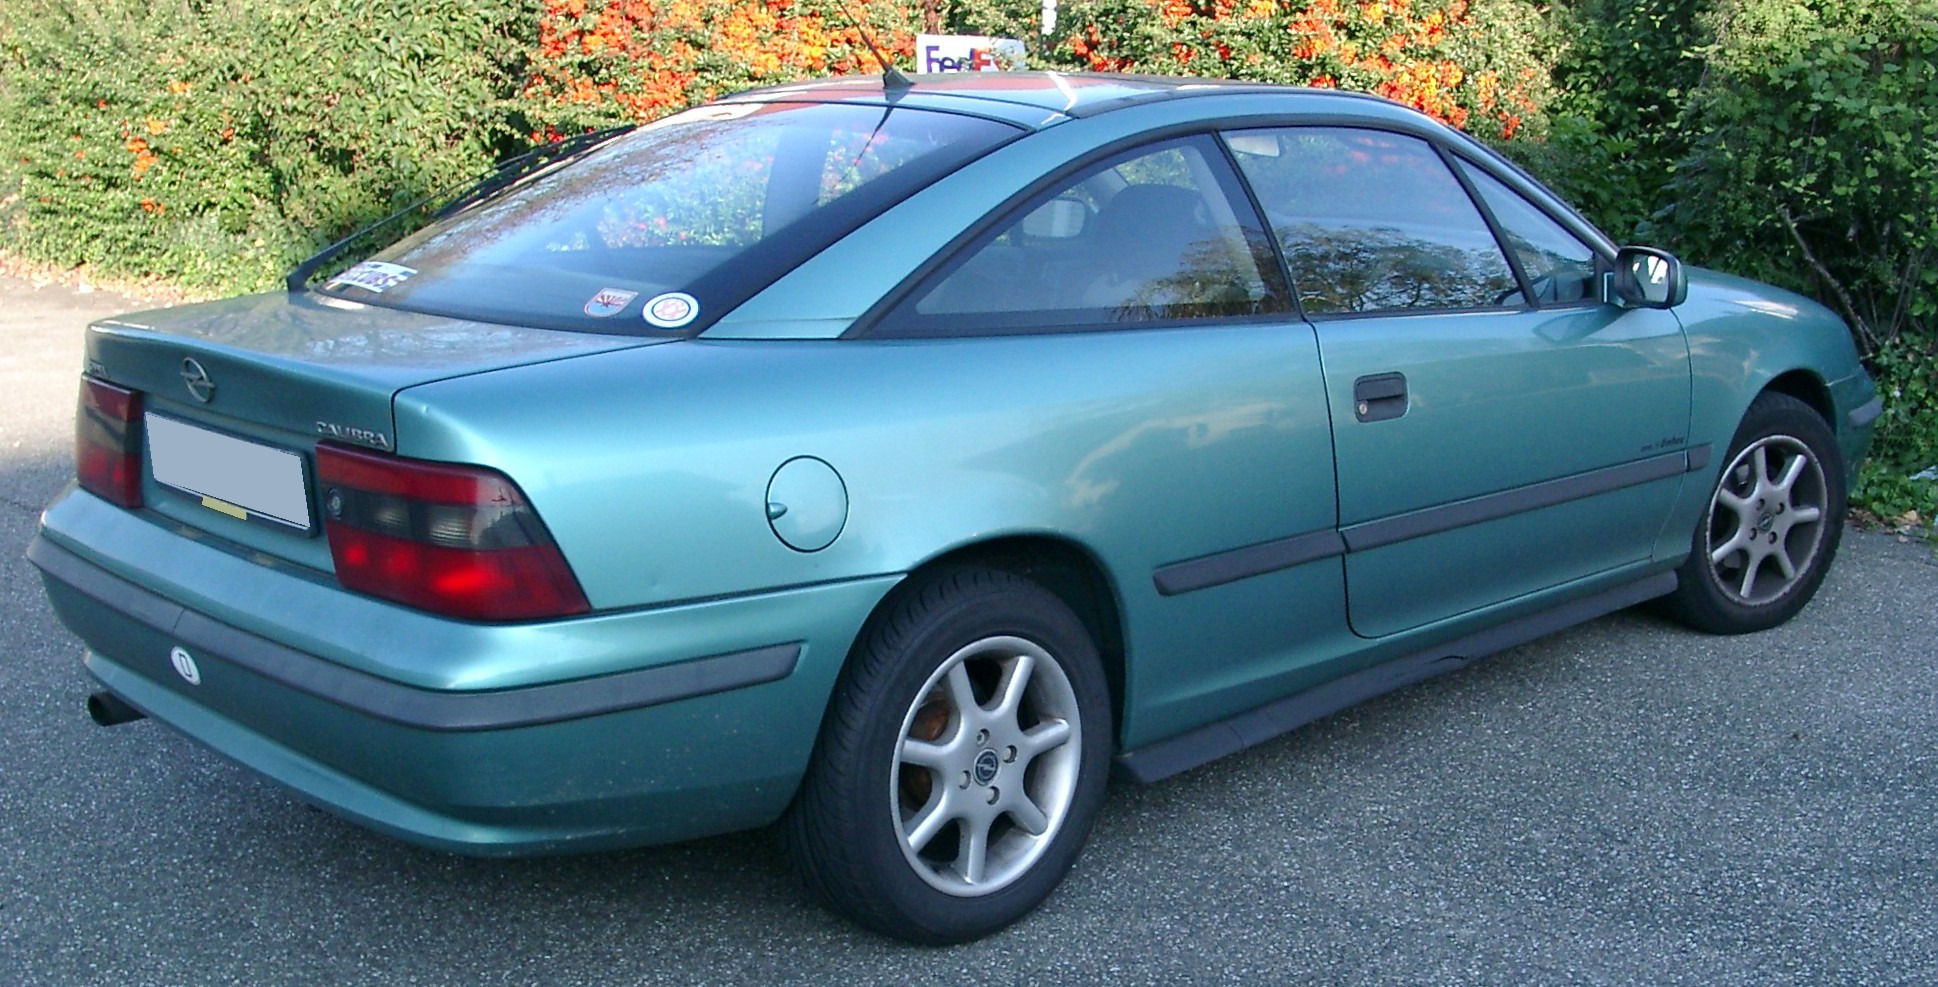 File:Opel Calibra rear 20071007.jpg